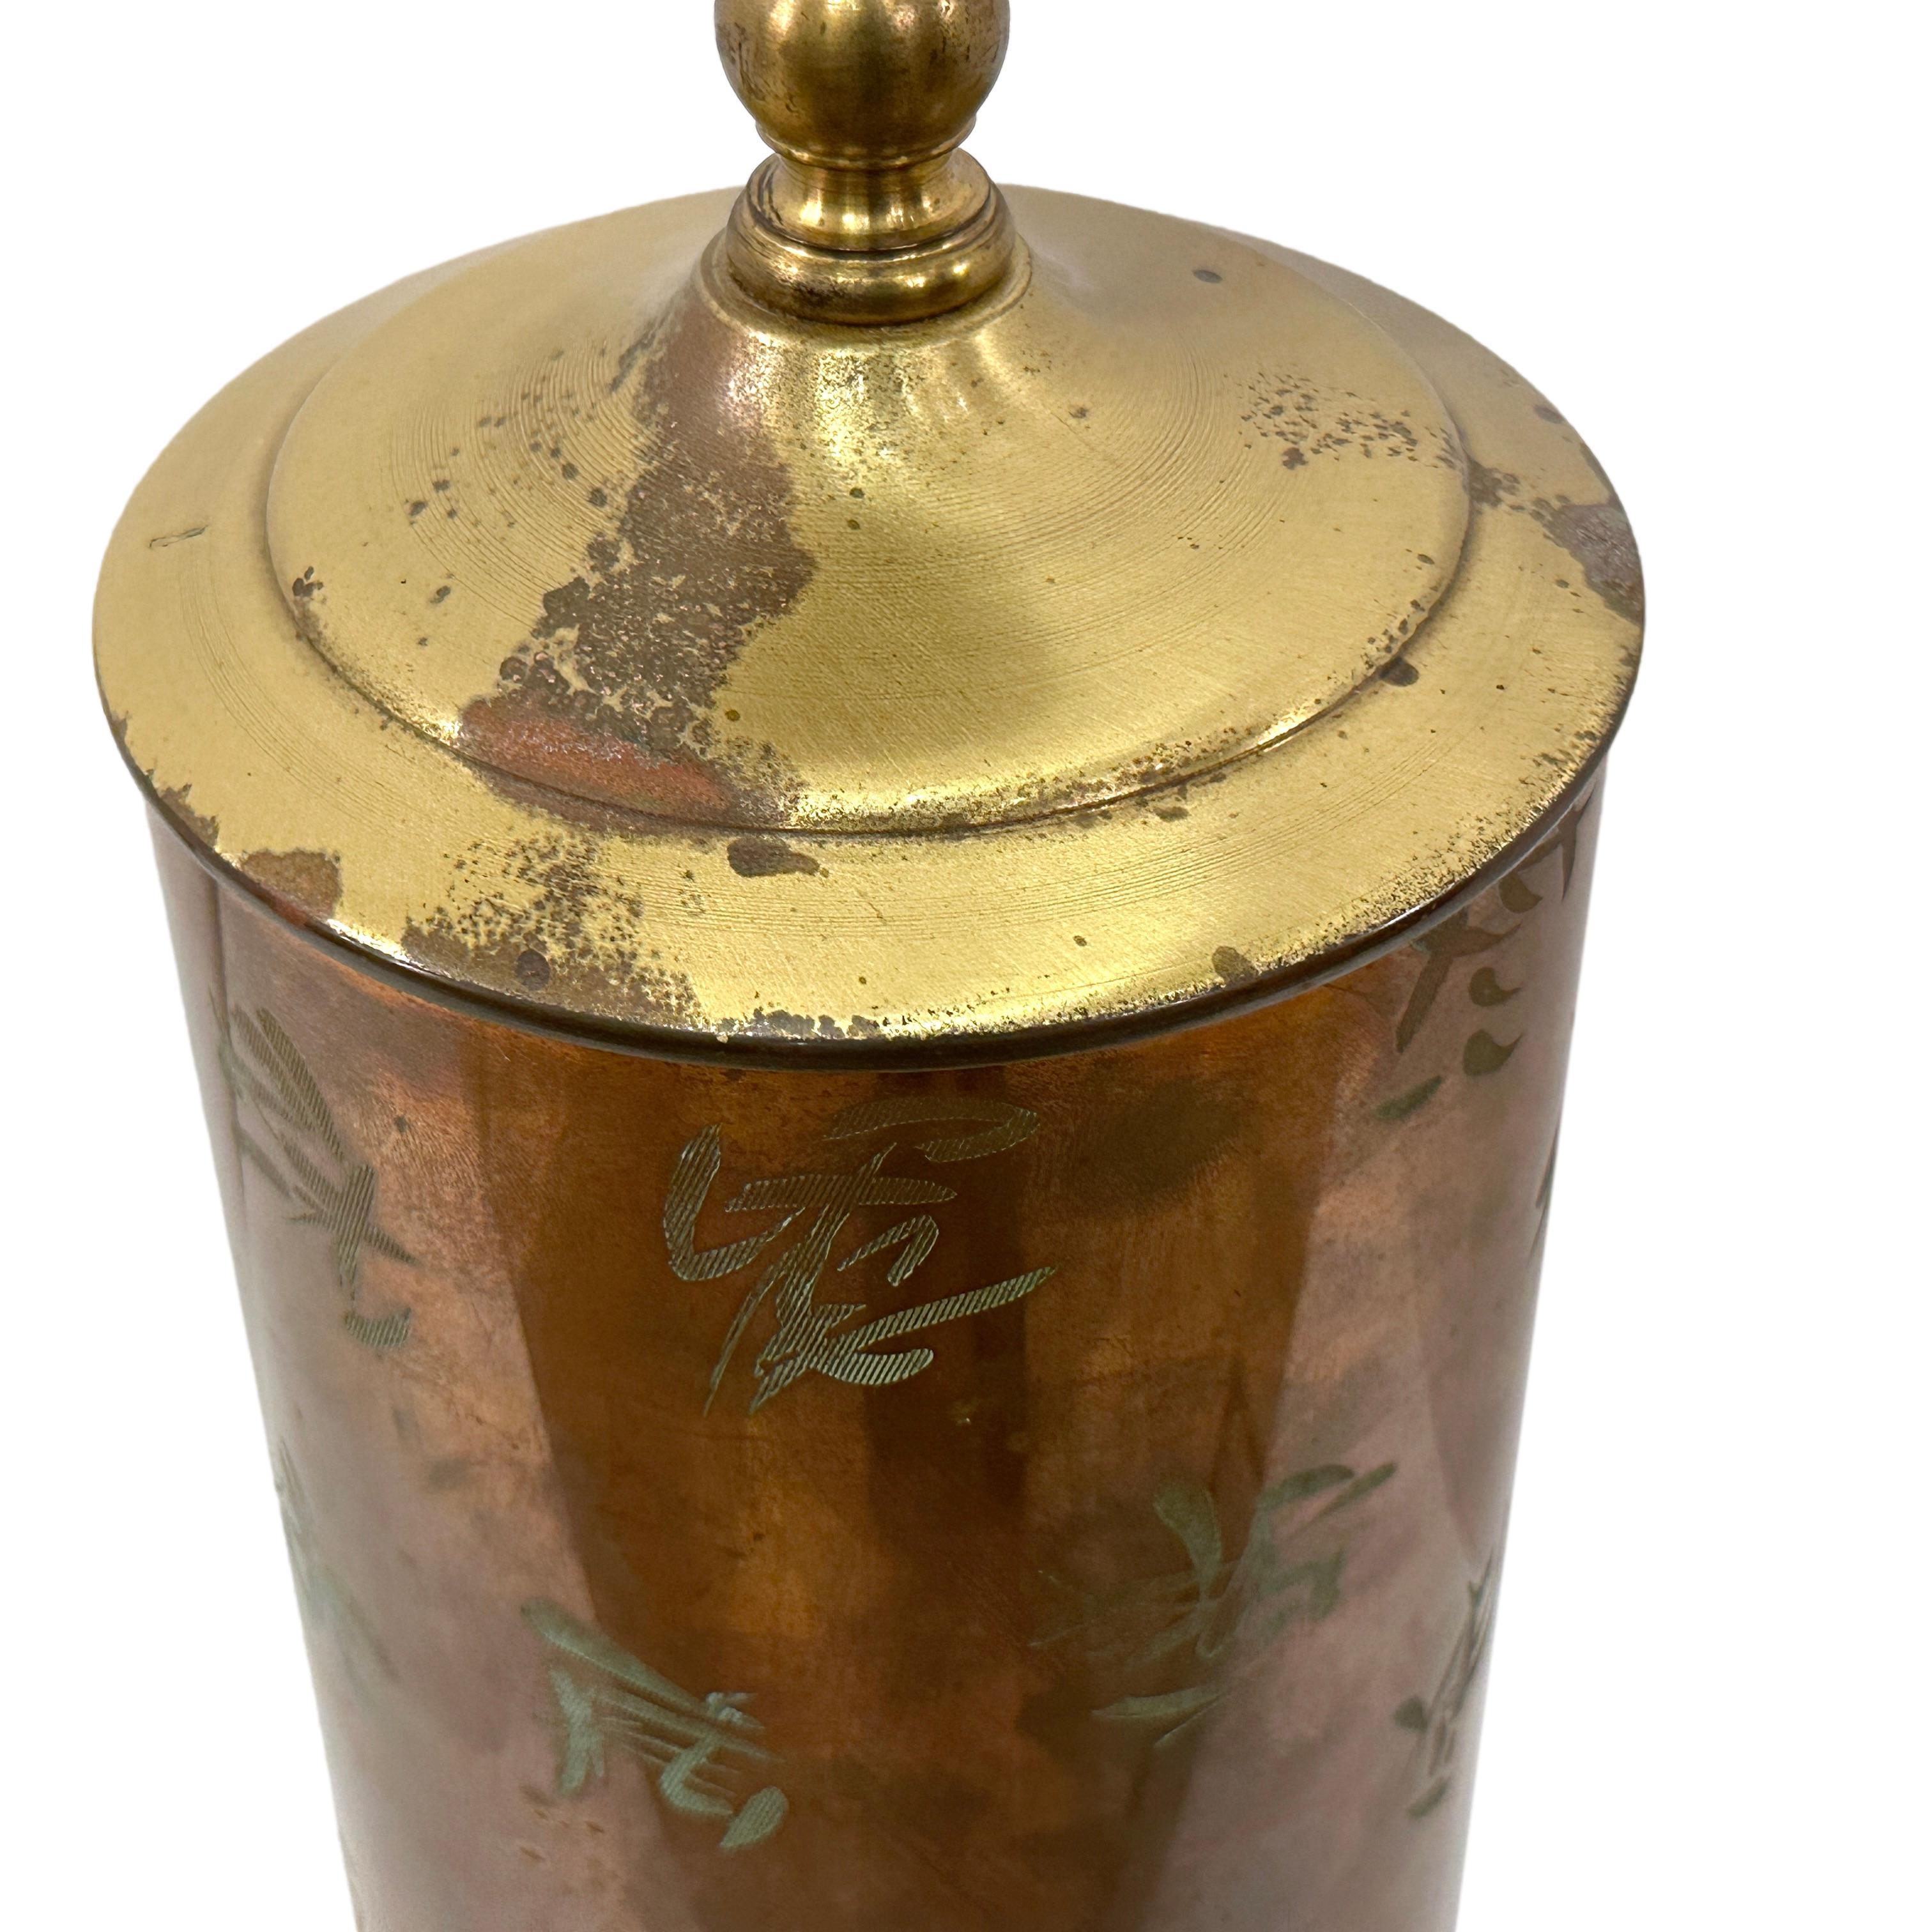 Chinesische Lampe aus geätztem Kupfer mit patinierter Oberfläche, um 1900.

Abmessungen:
Höhe des Körpers: 12